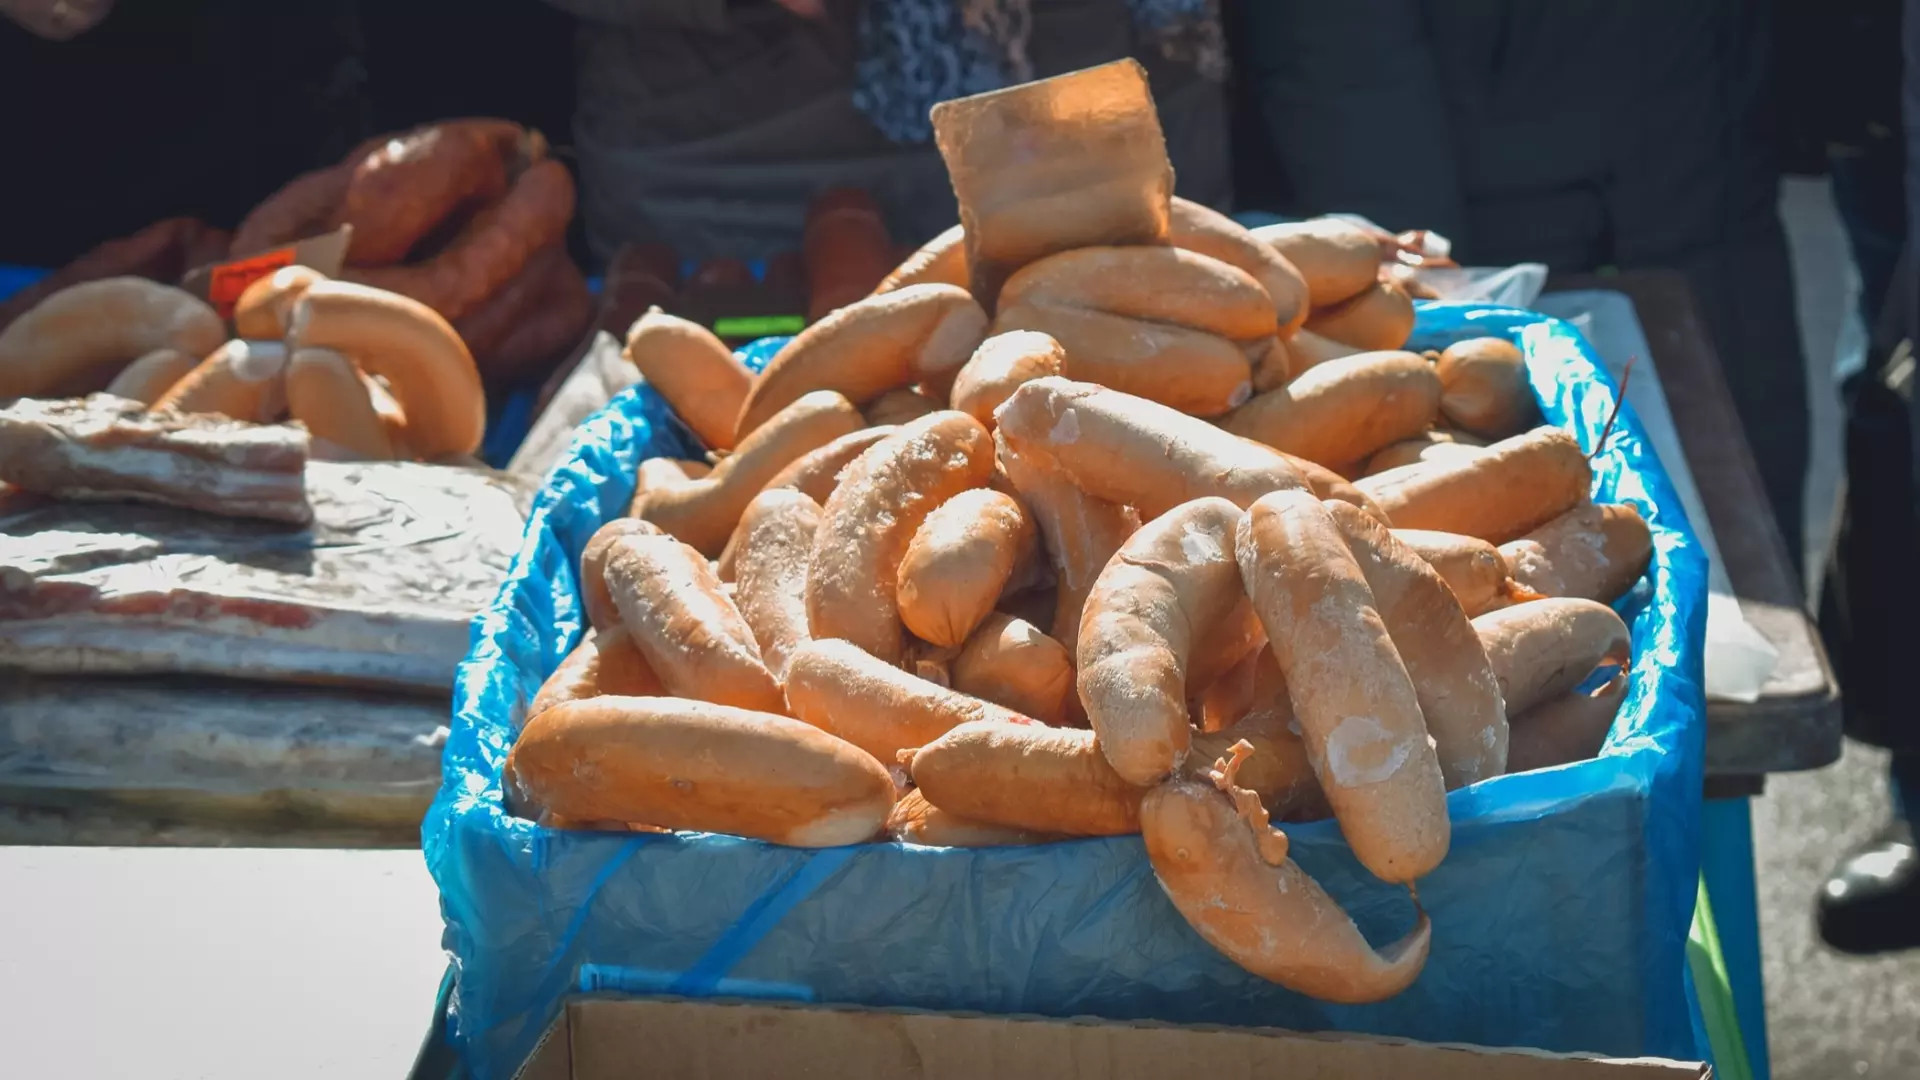 В Ростовской области предприятие торговало сосисками из неизвестных ингредиентов